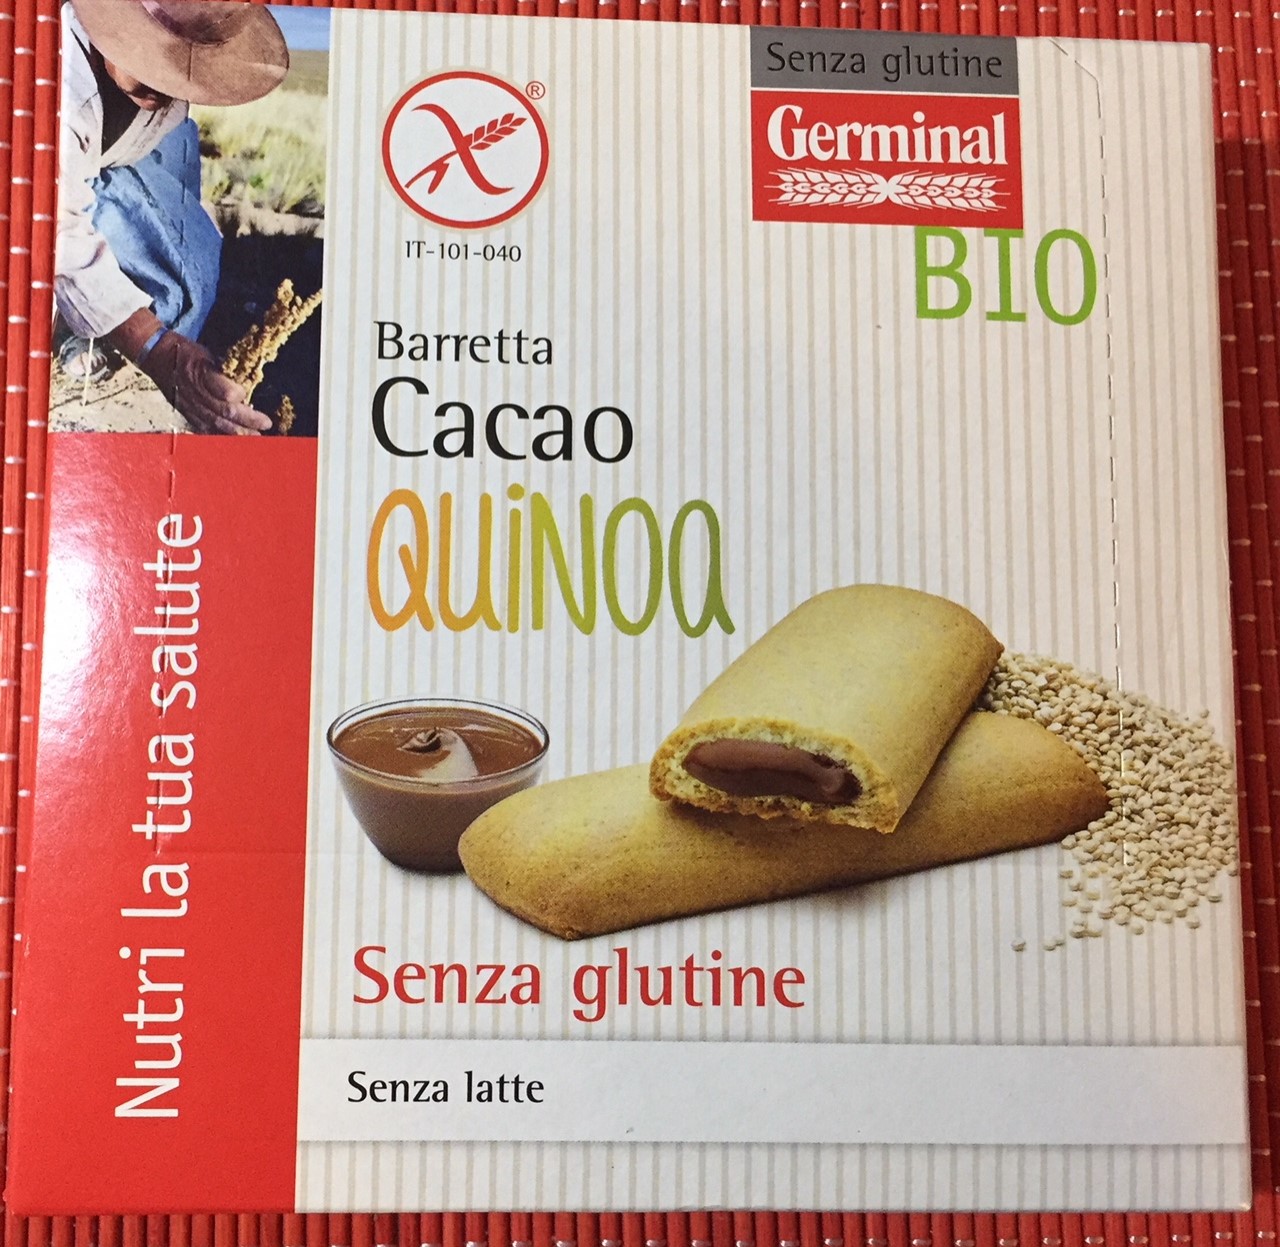 Barretta cacao quinoa Germinal - lattosio 0% Image